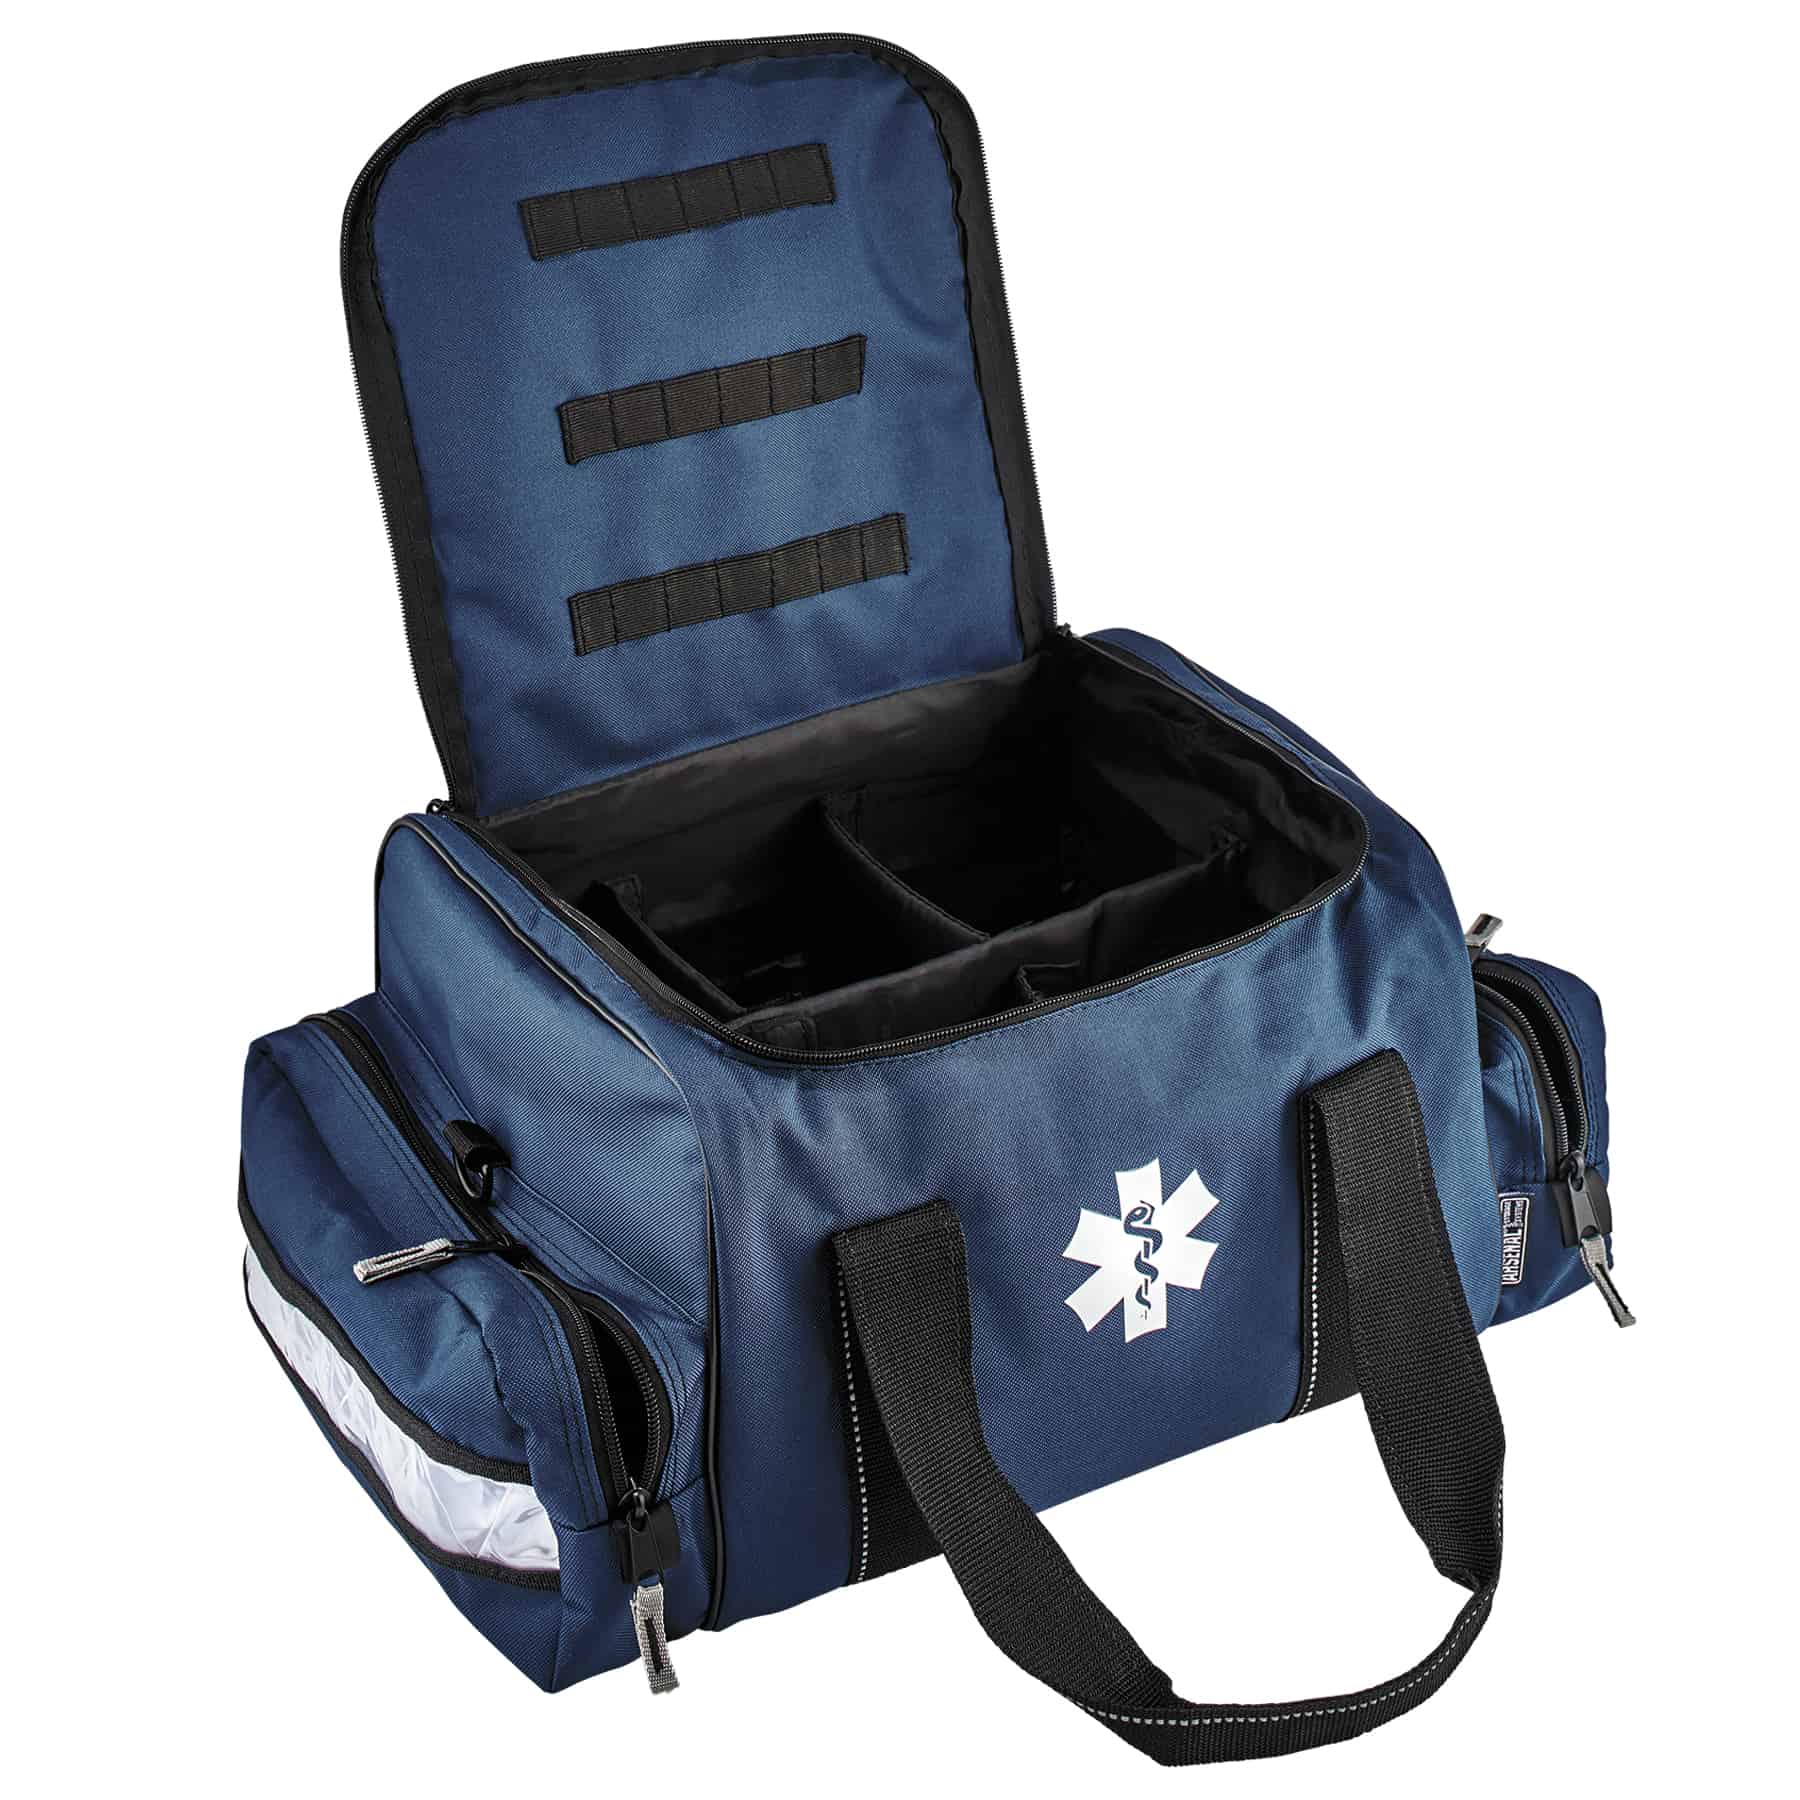 Ergodyne Arsenal 5210 Small Medic First Responder Trauma Duffel Bag with Shoulder Strap Orange